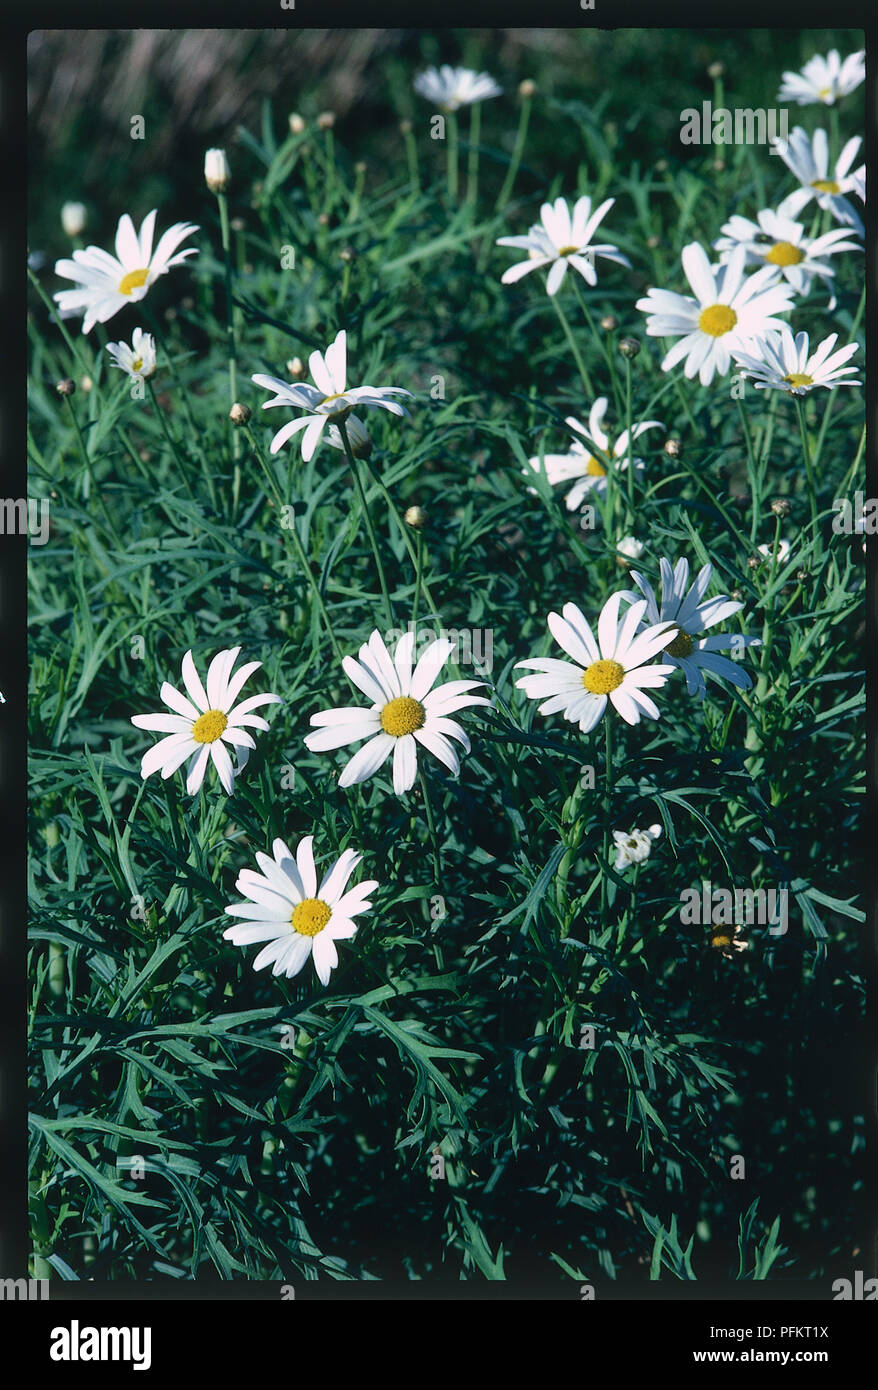 Weiß, blühende Staude oder subshrub im Sommer Lager daisy Blütenköpfe oder Blumen mit gelben Scheibenblüten und weißen Zungenblüten, über Blätter Stockfoto